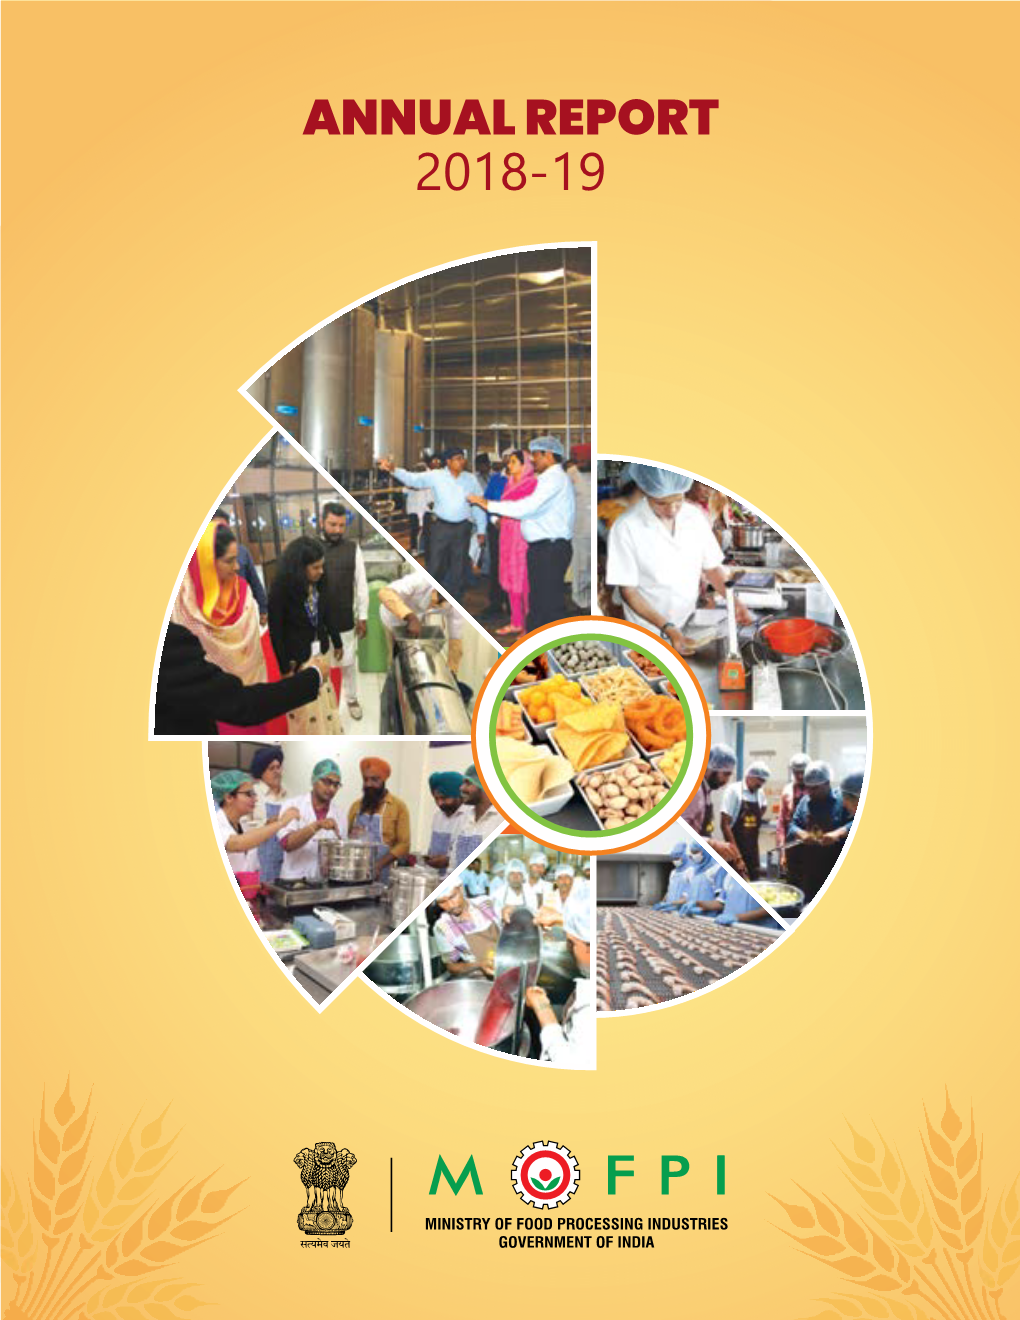 MOFPI Annual Report 2018-19